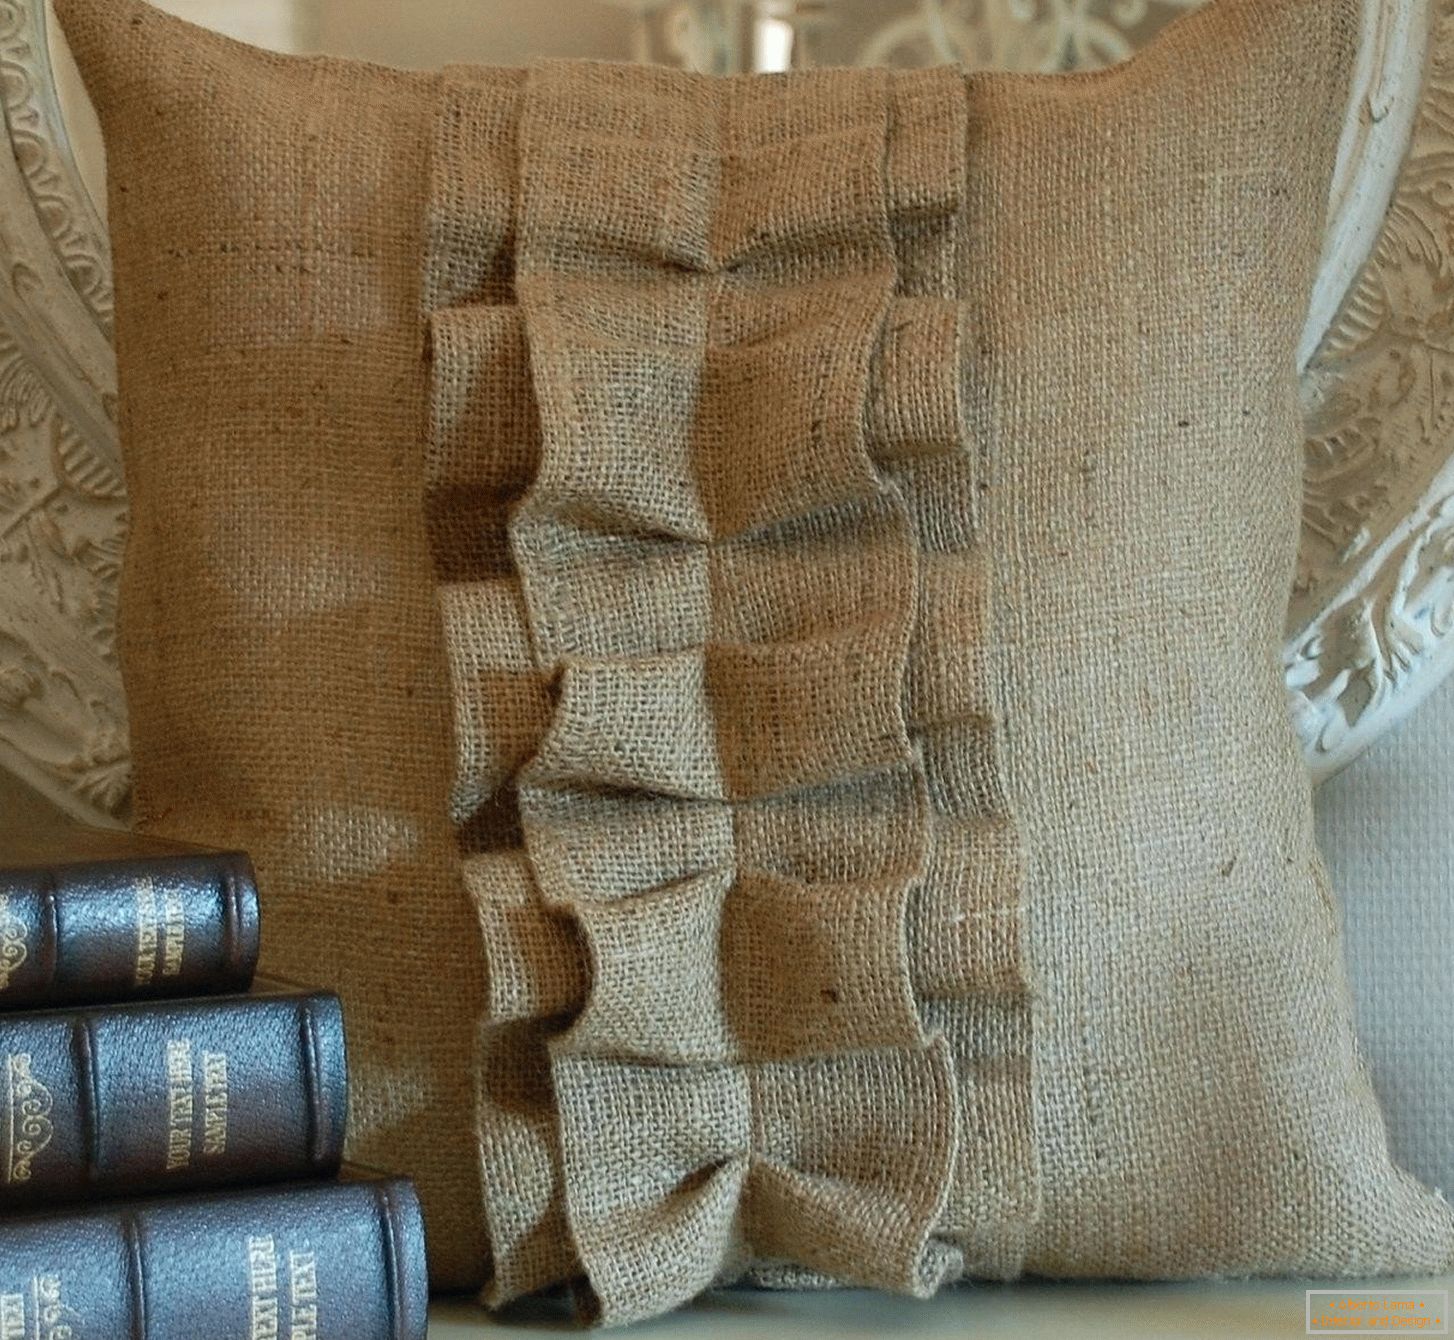 Livros e um saco de serapilheira